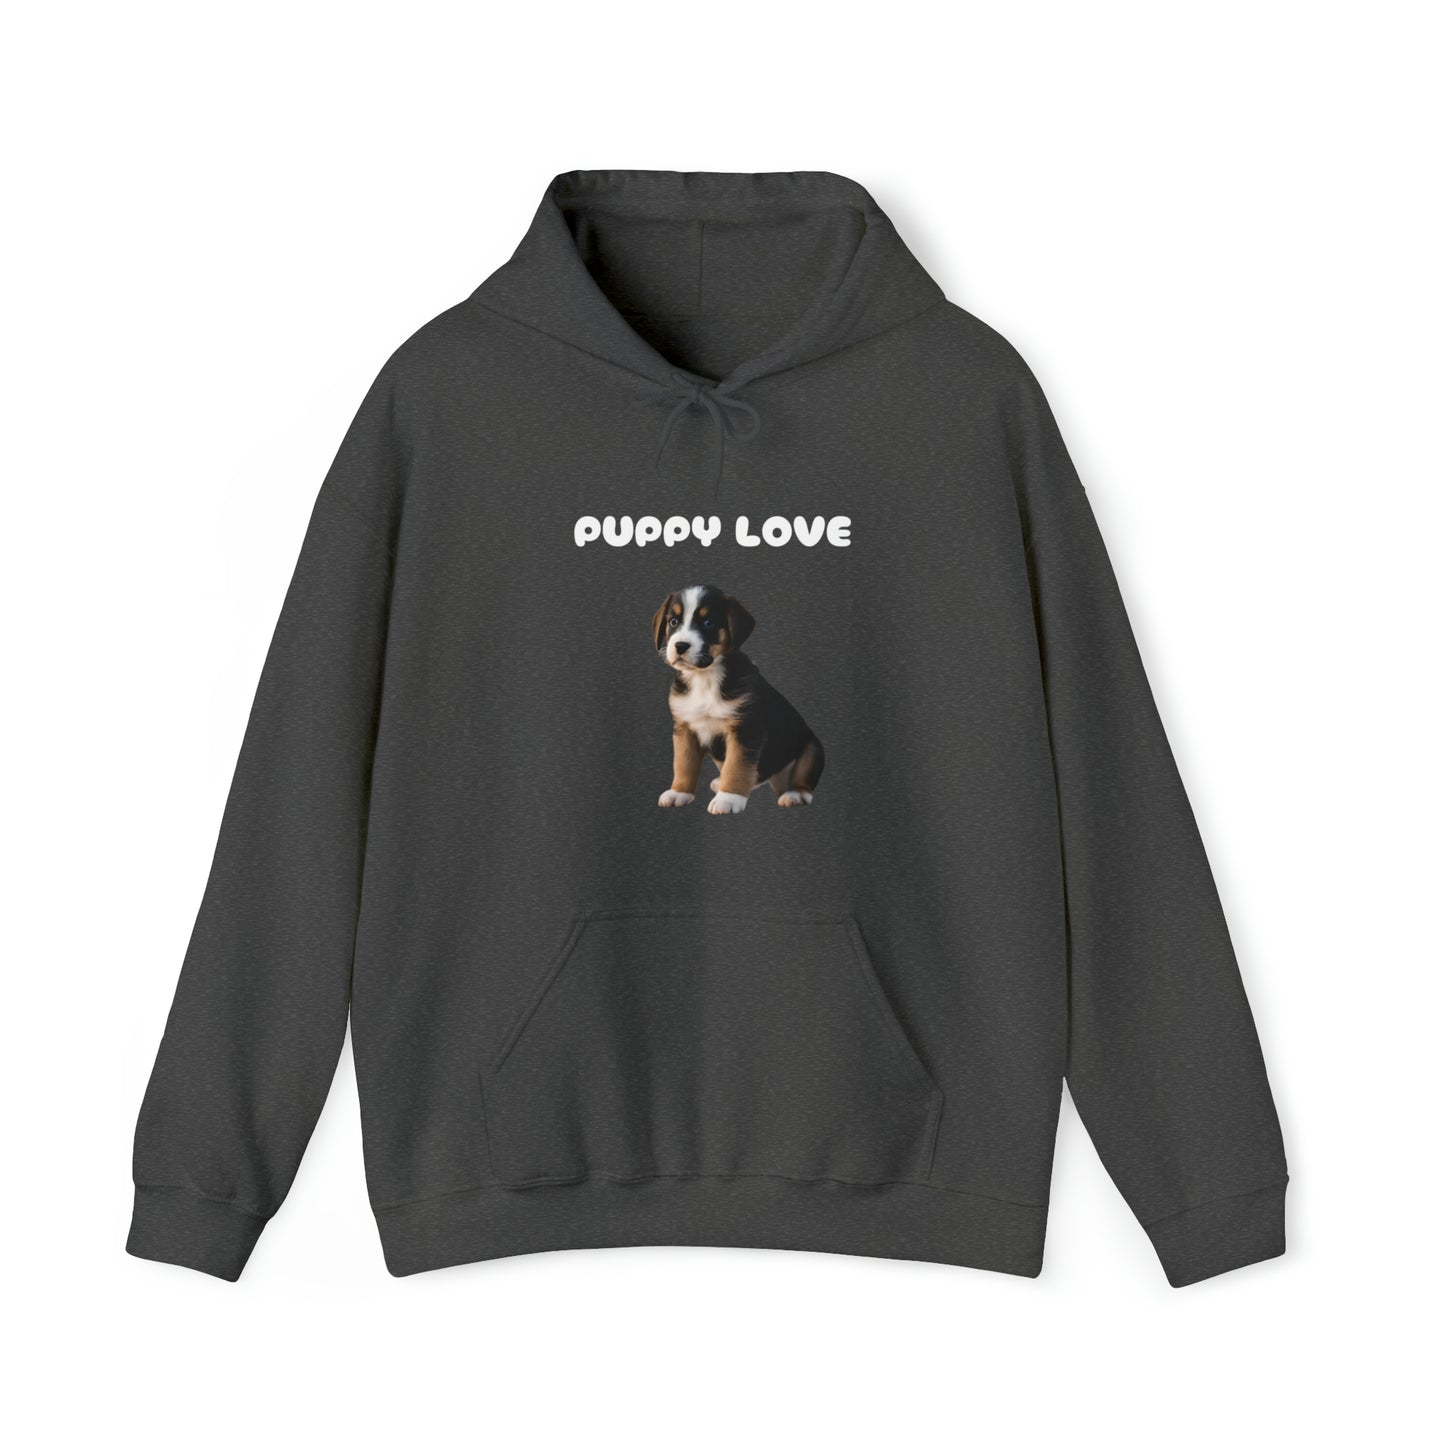 Dog Lover unisex Hooded sweatshirt gift